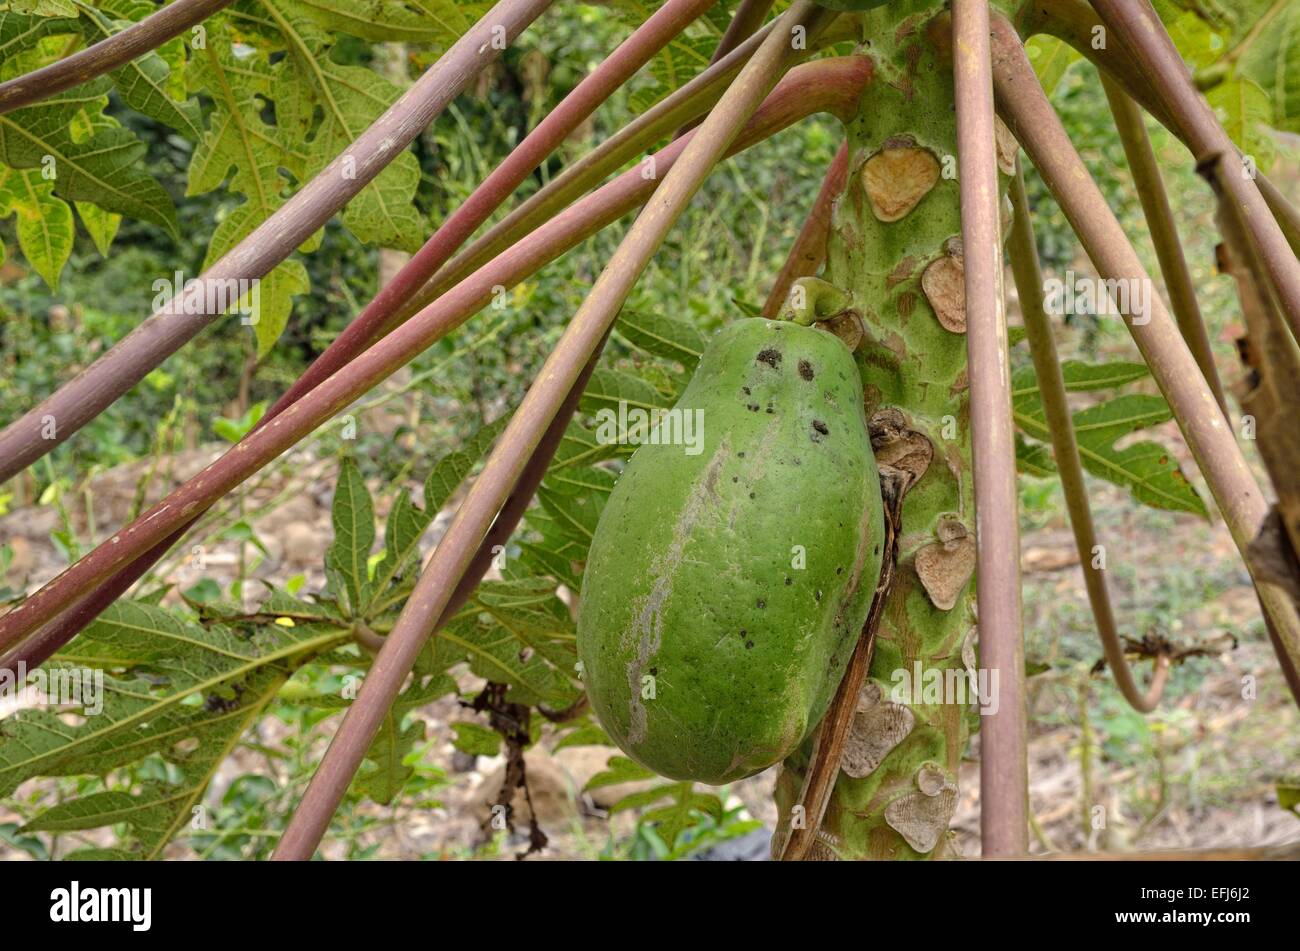 Pawpaw (Carica papaya), State of Veracruz, Mexico Stock Photo